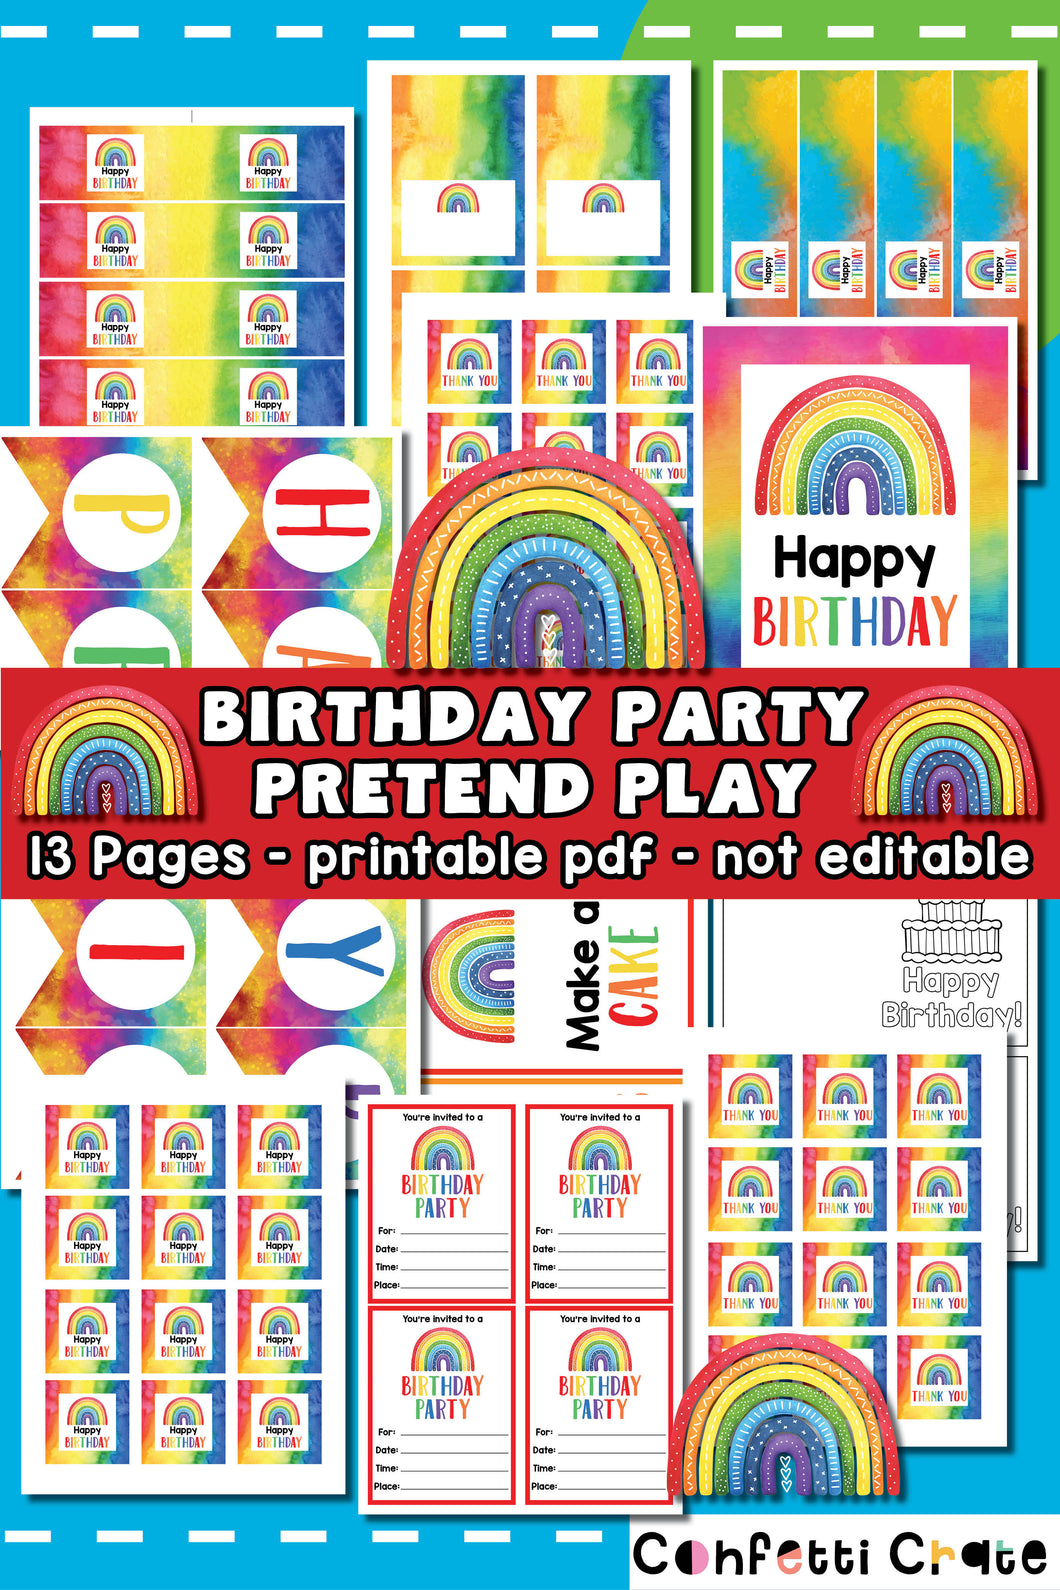 Birthday party pretend play printables.